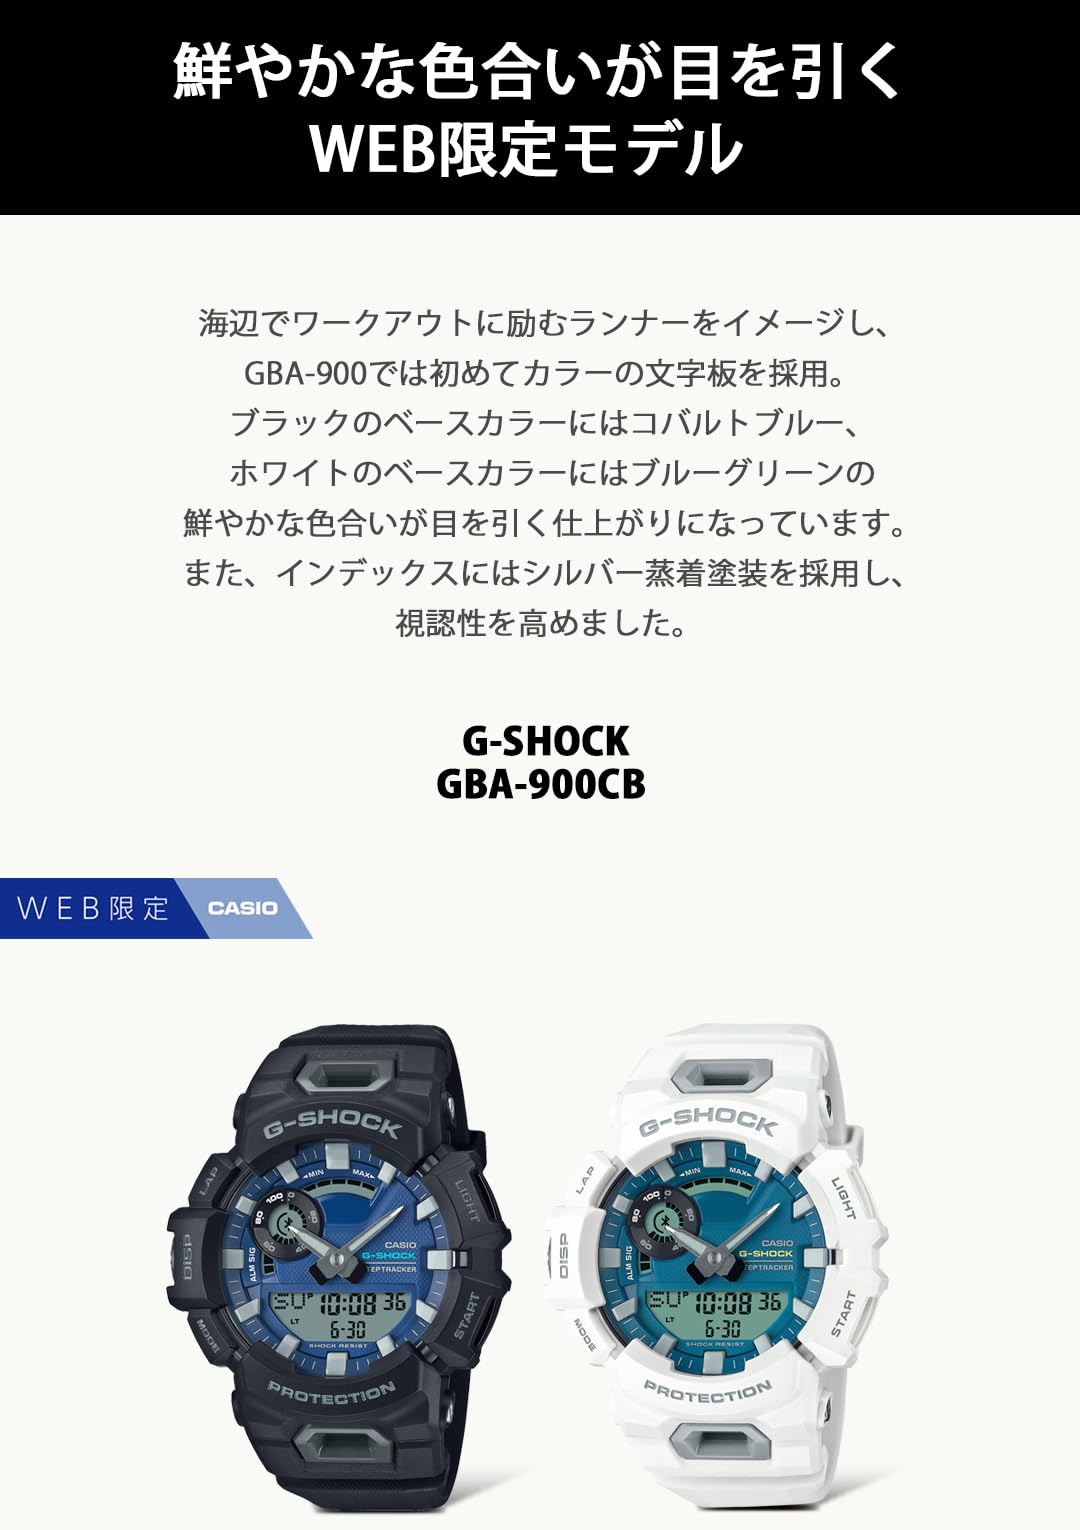 ジーショック [カシオ] 腕時計 【国内正規品】web限定 Bluetooth搭載 距離計測機能 GBA-900CB-1AJF メンズ ブラック - BanzaiHobby